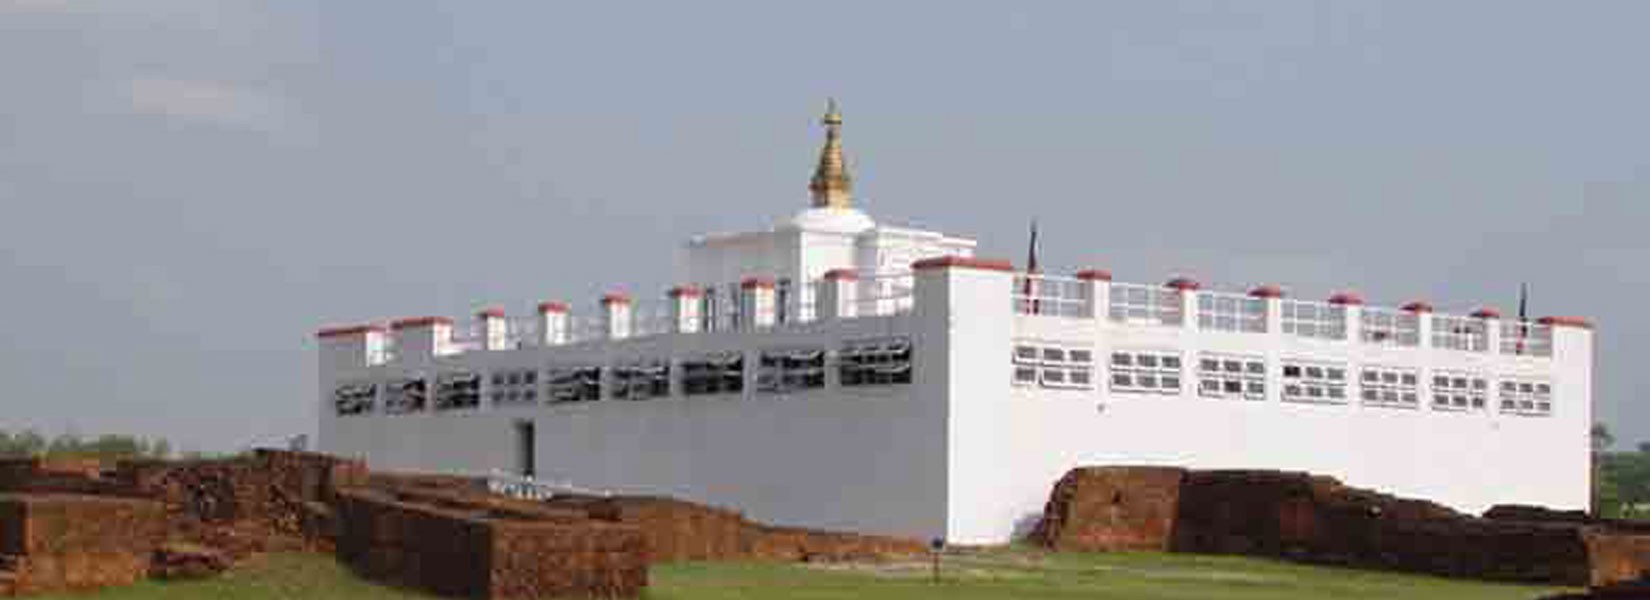 Lumbini Tour - Birth Place of Lord Buddha